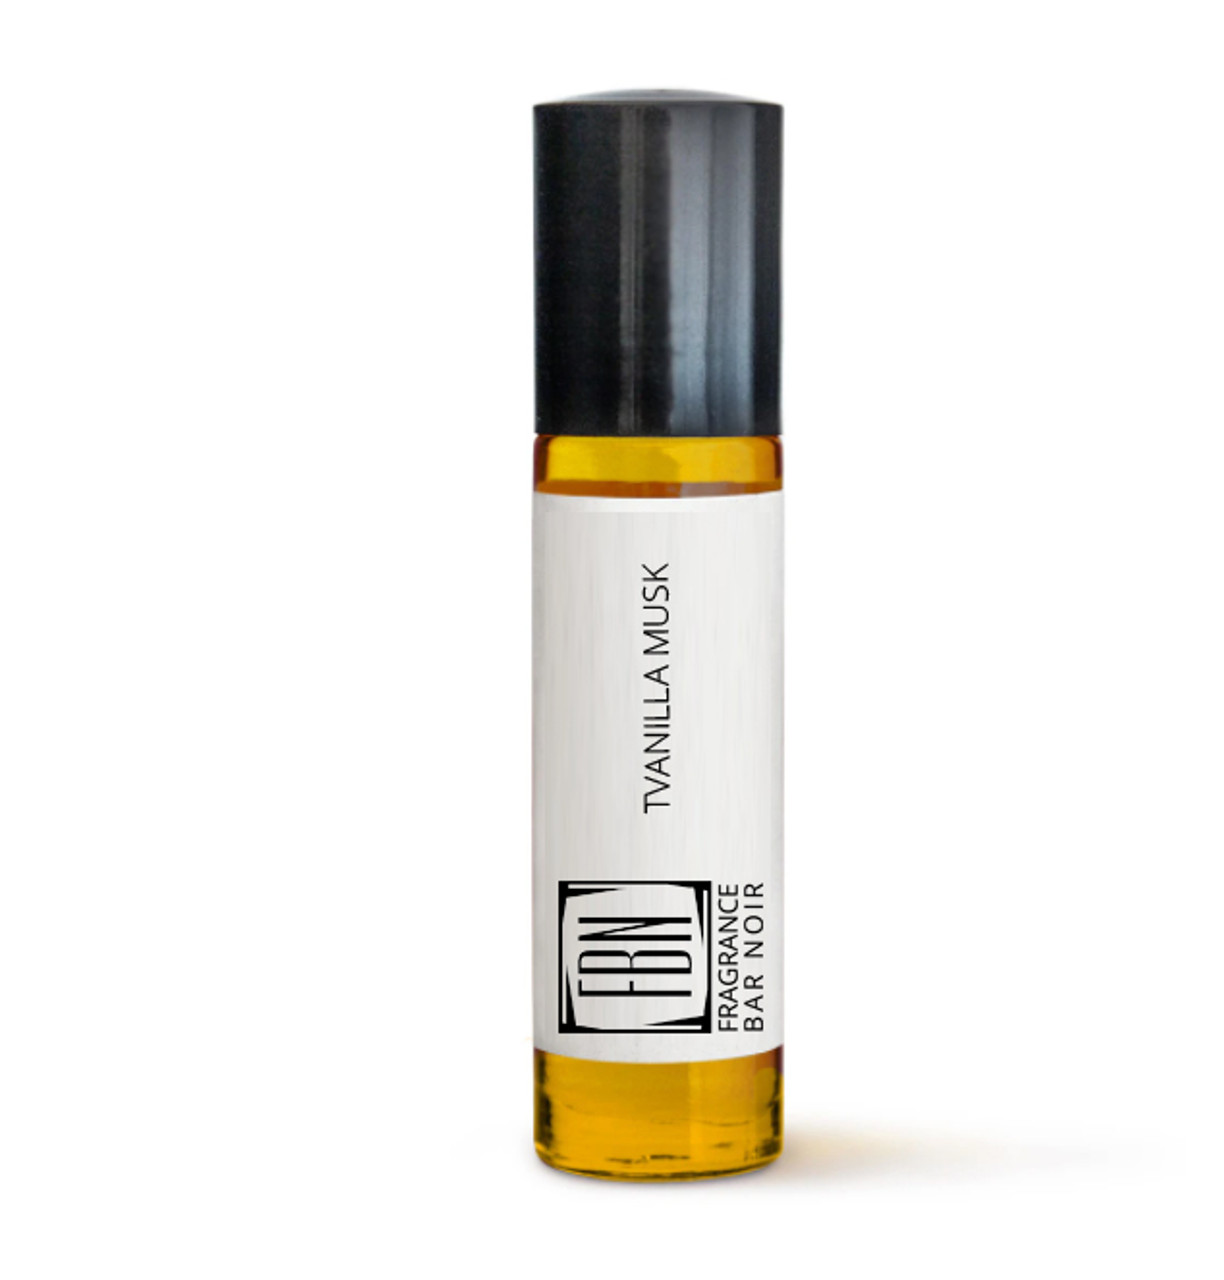 Vanilla Musk Import [Type*] : Oil - The Fragrance Bar Noir